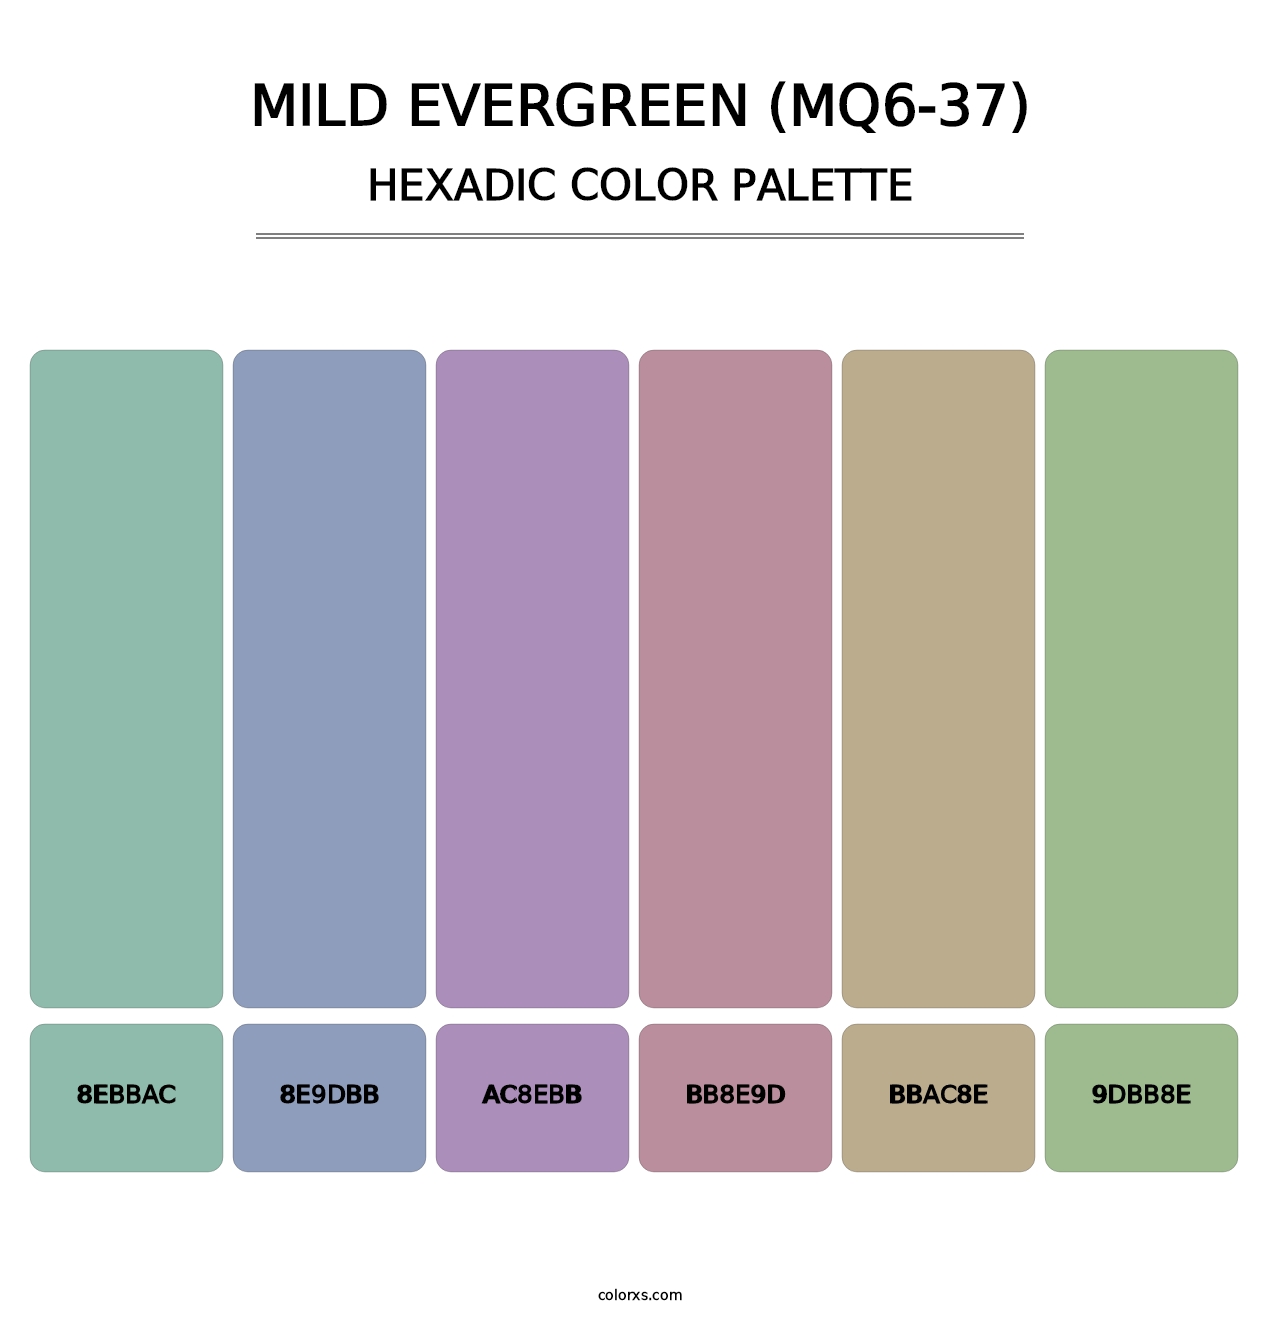 Mild Evergreen (MQ6-37) - Hexadic Color Palette